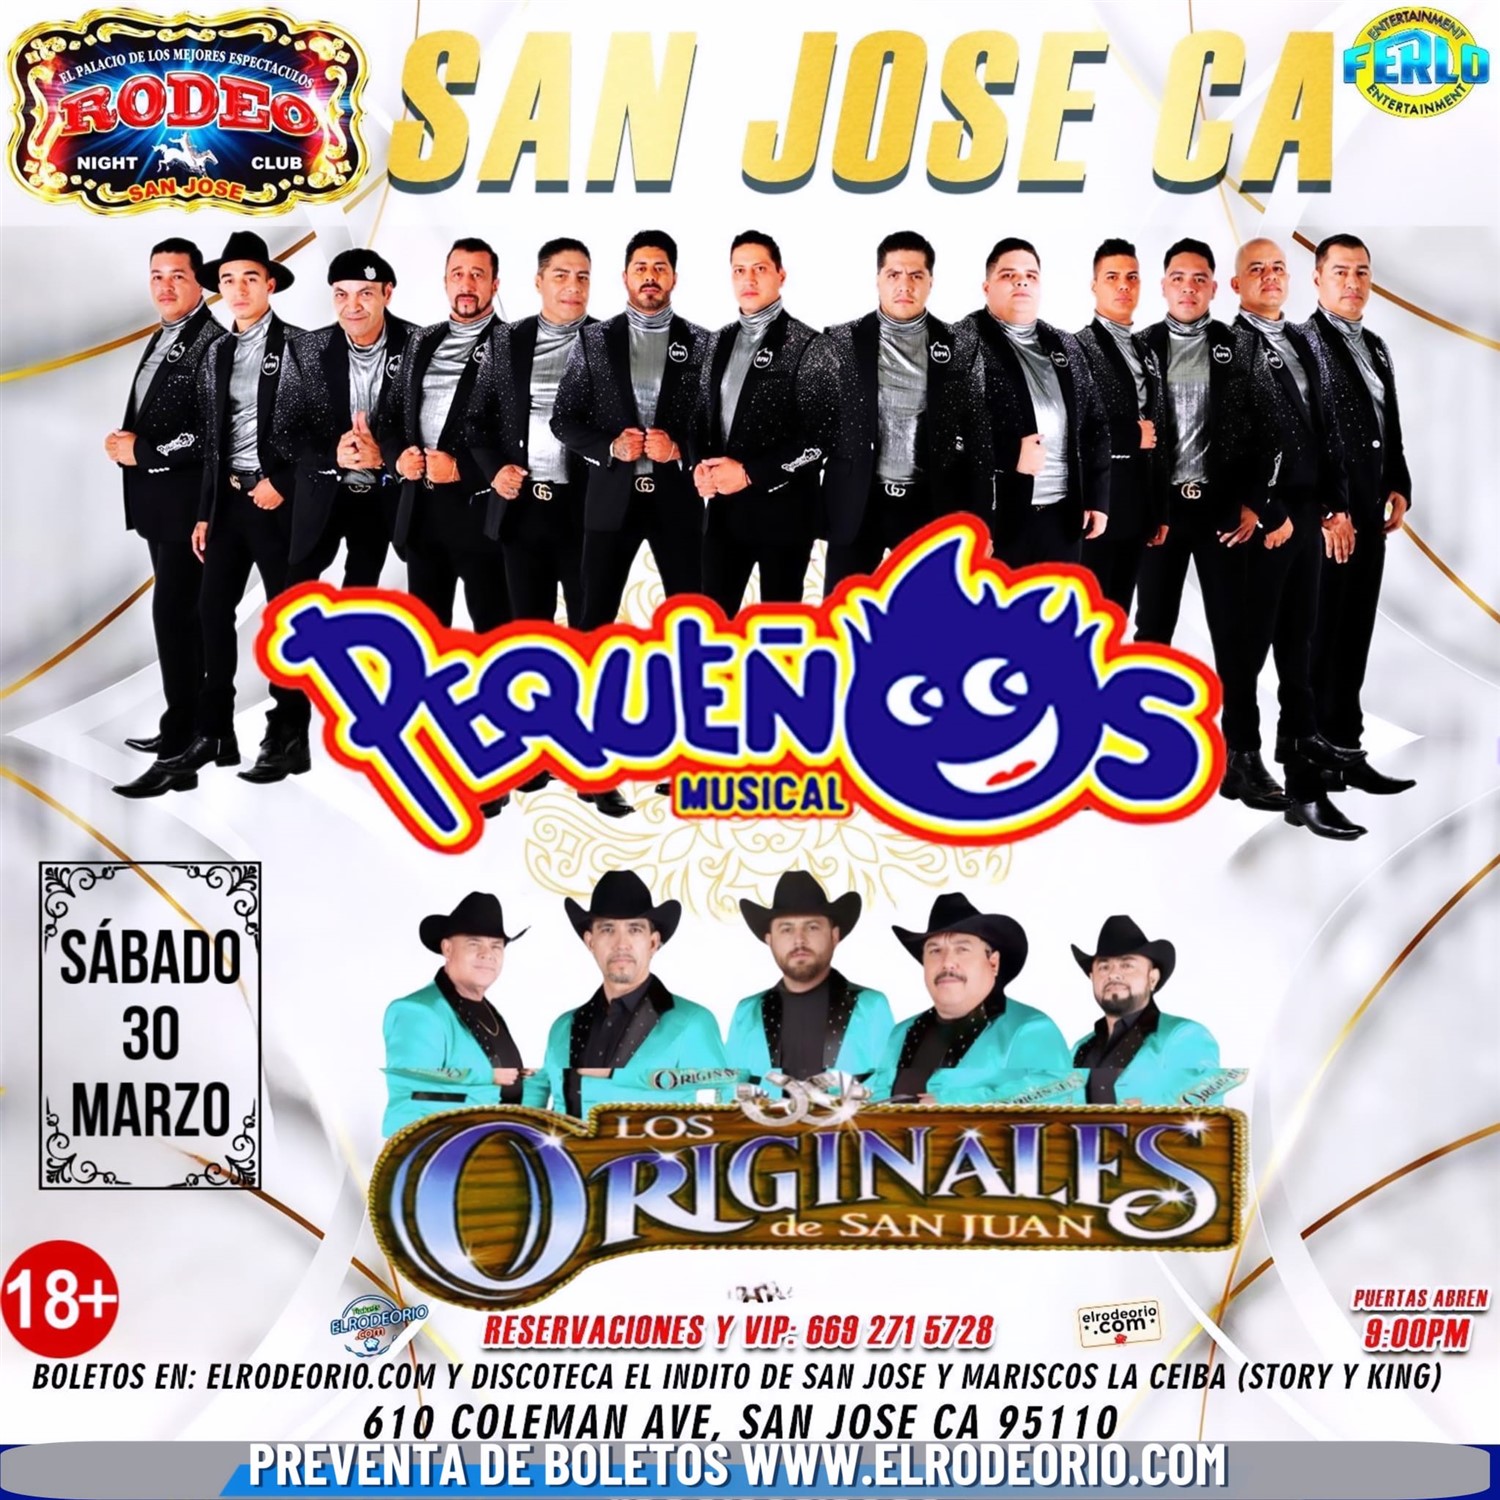 Banda Pequenos Musical y Los Originales de San Juan,Club Rodeo  on Mar 30, 21:00@Club Rodeo - Buy tickets and Get information on elrodeorio.com sanjoseentertainment